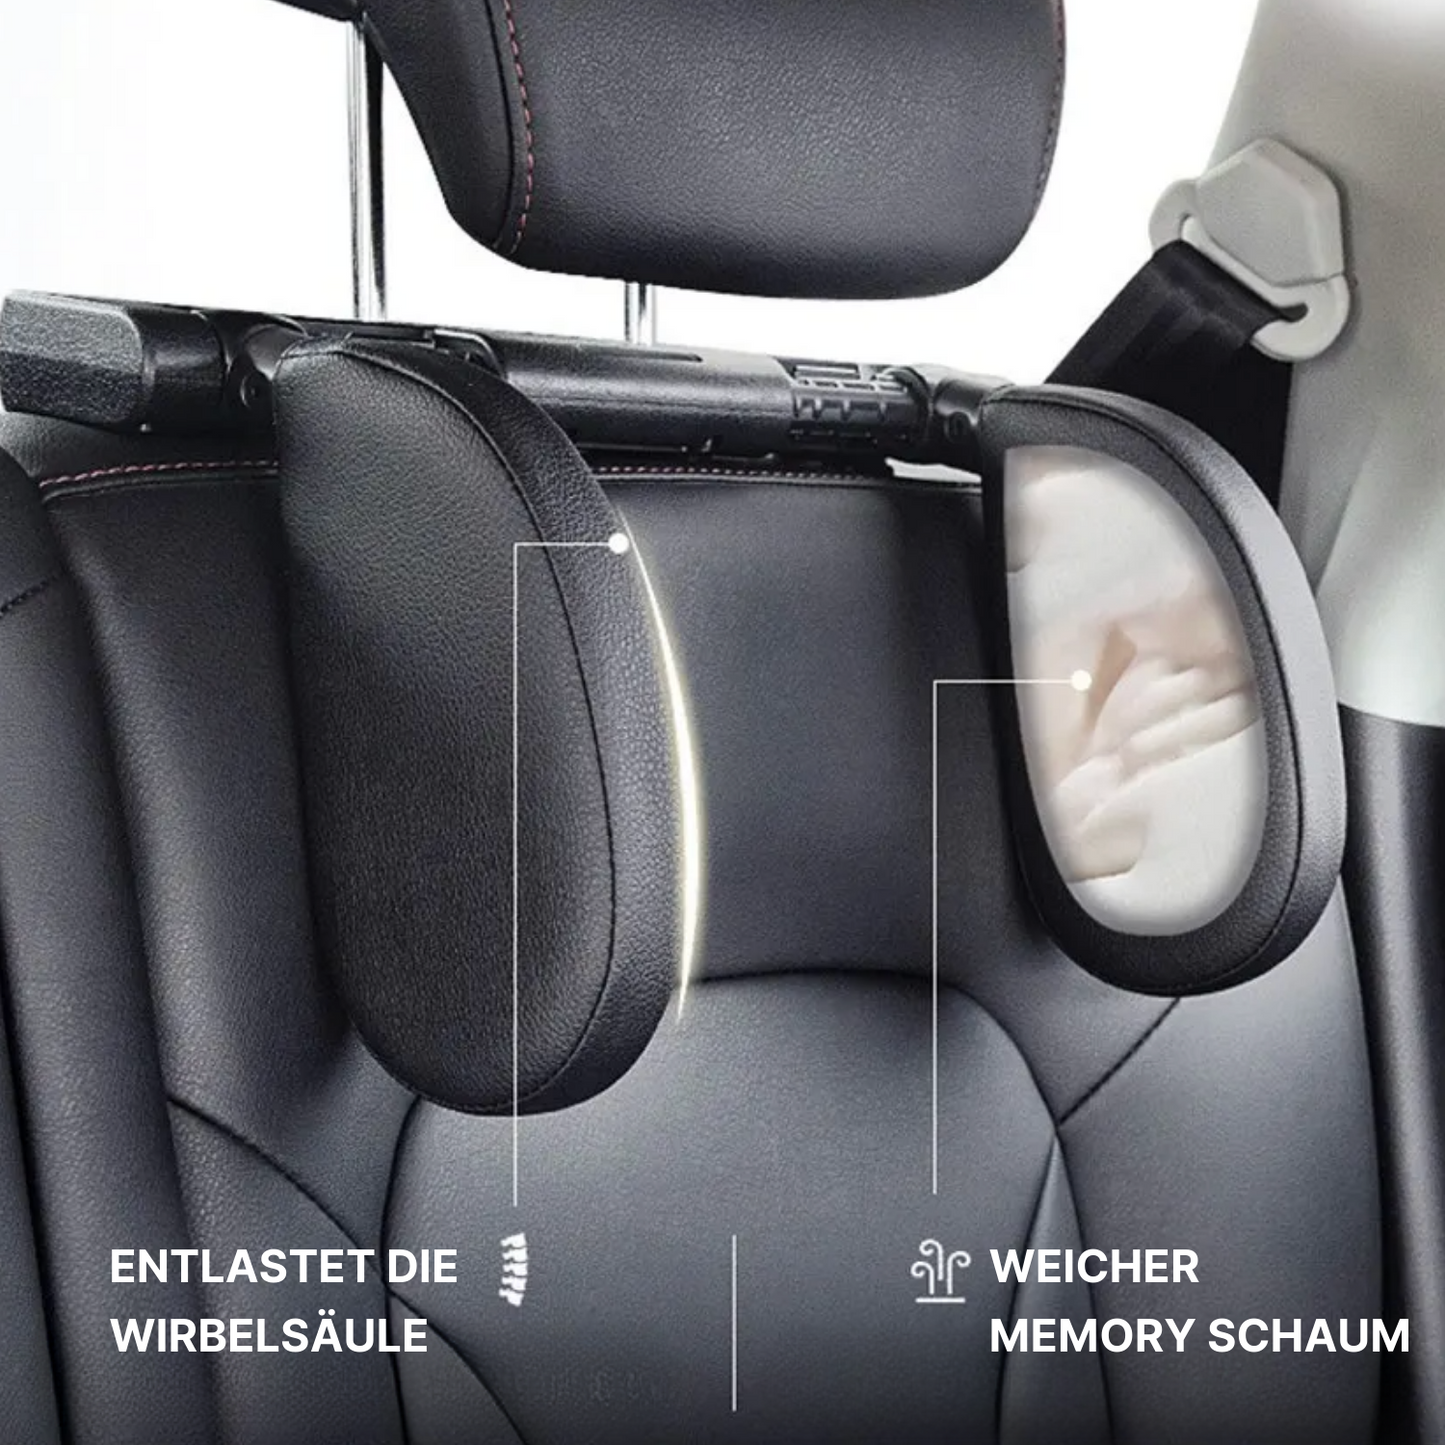 Verstellbare Nackenstütze fürs Auto - entspannt unterwegs